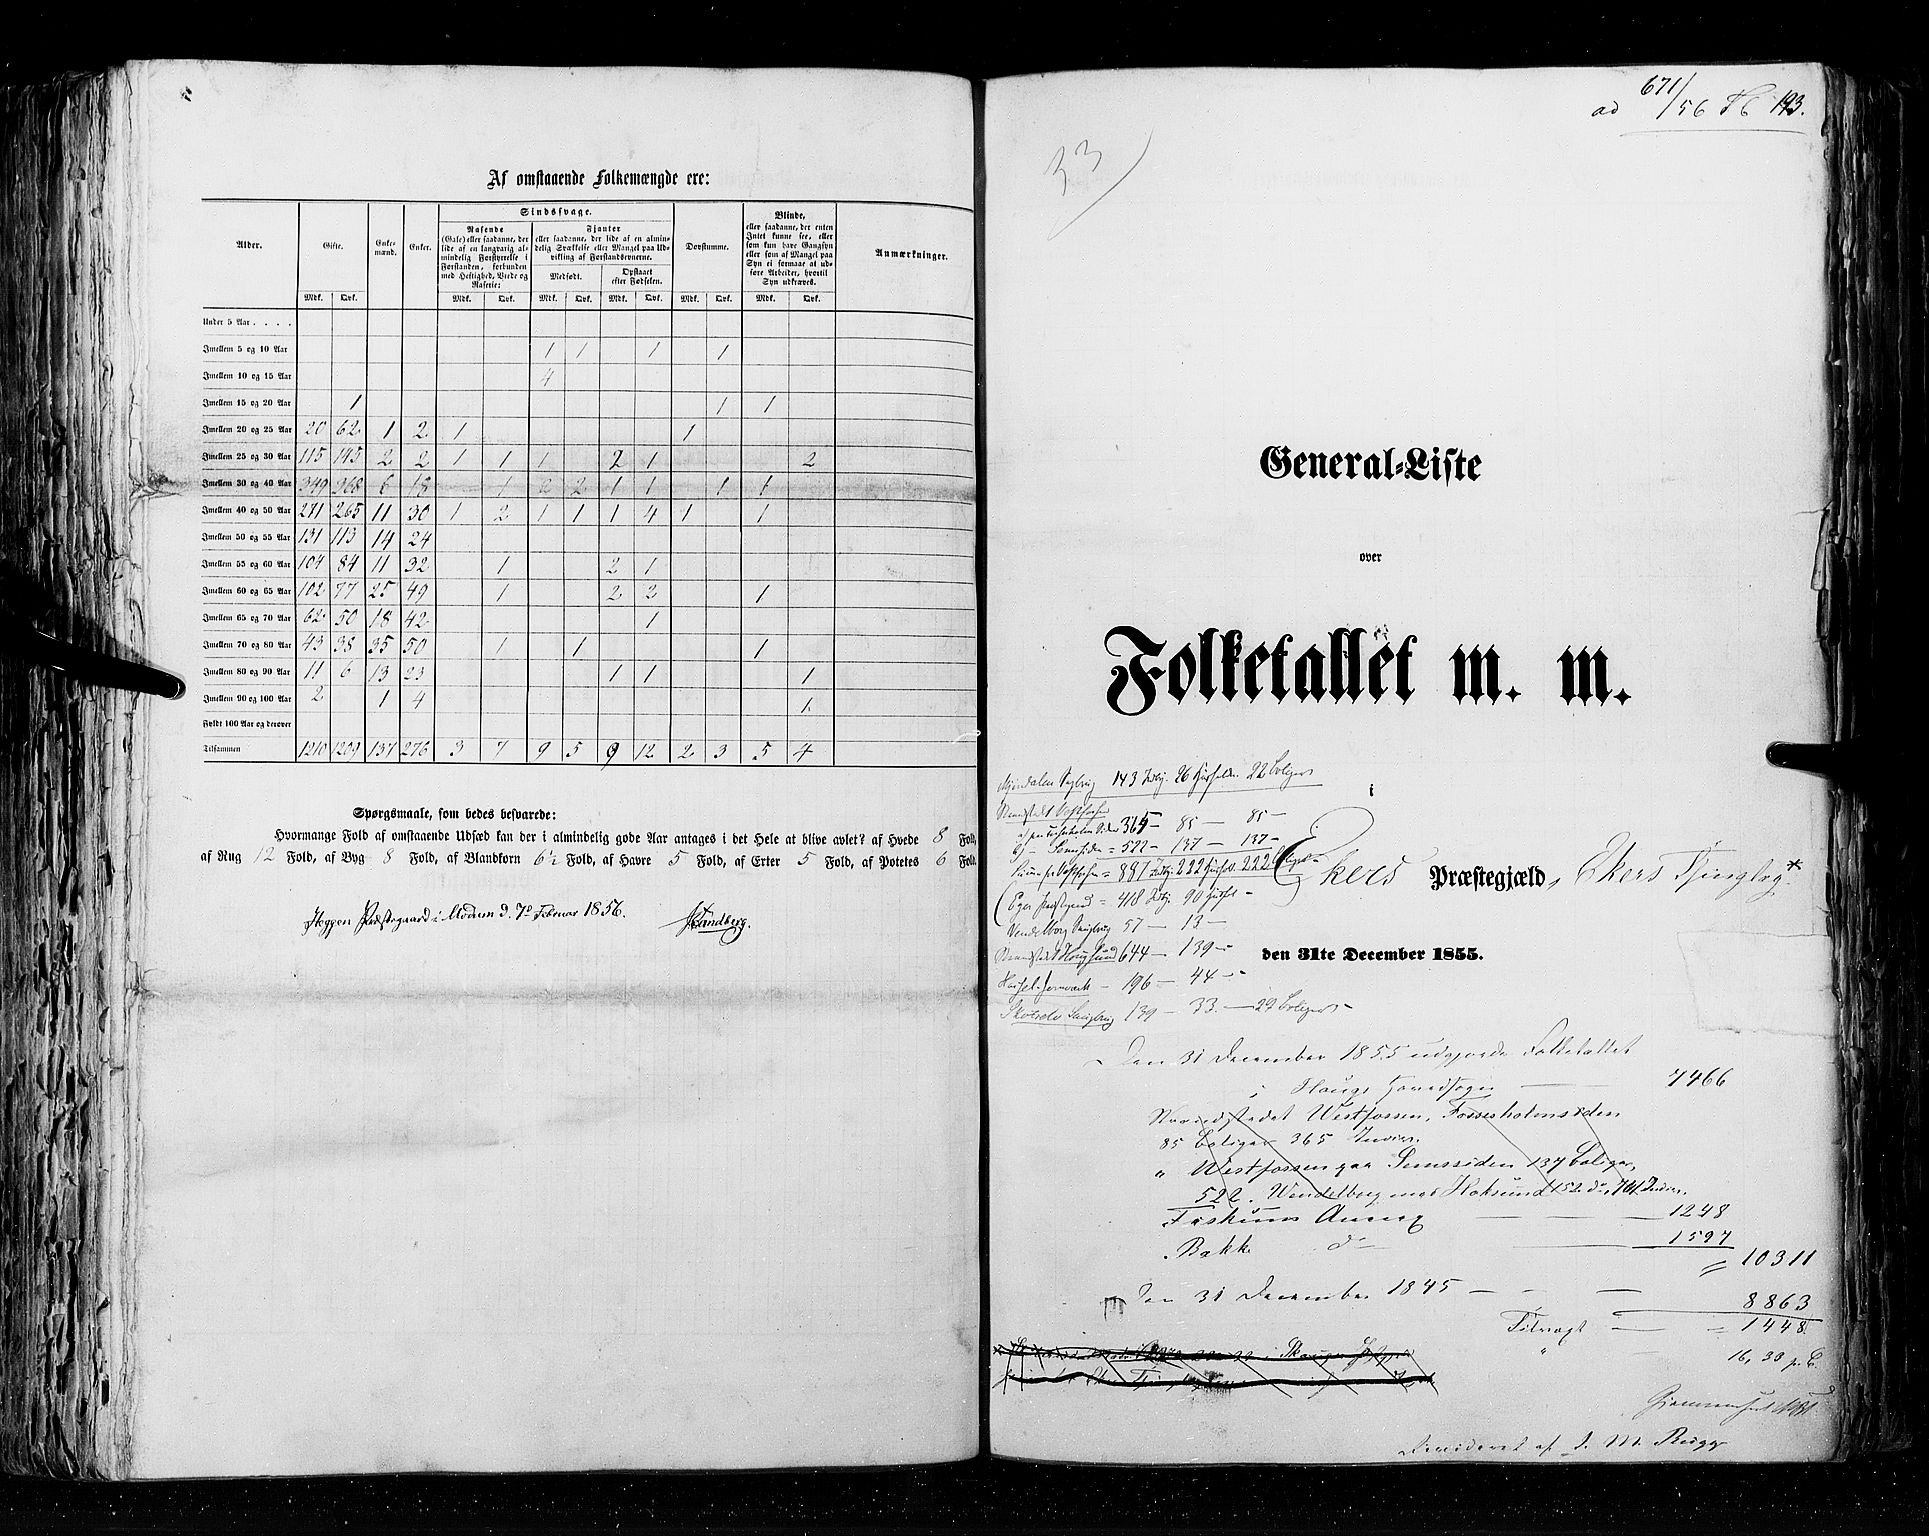 RA, Folketellingen 1855, bind 2: Kristians amt, Buskerud amt og Jarlsberg og Larvik amt, 1855, s. 193